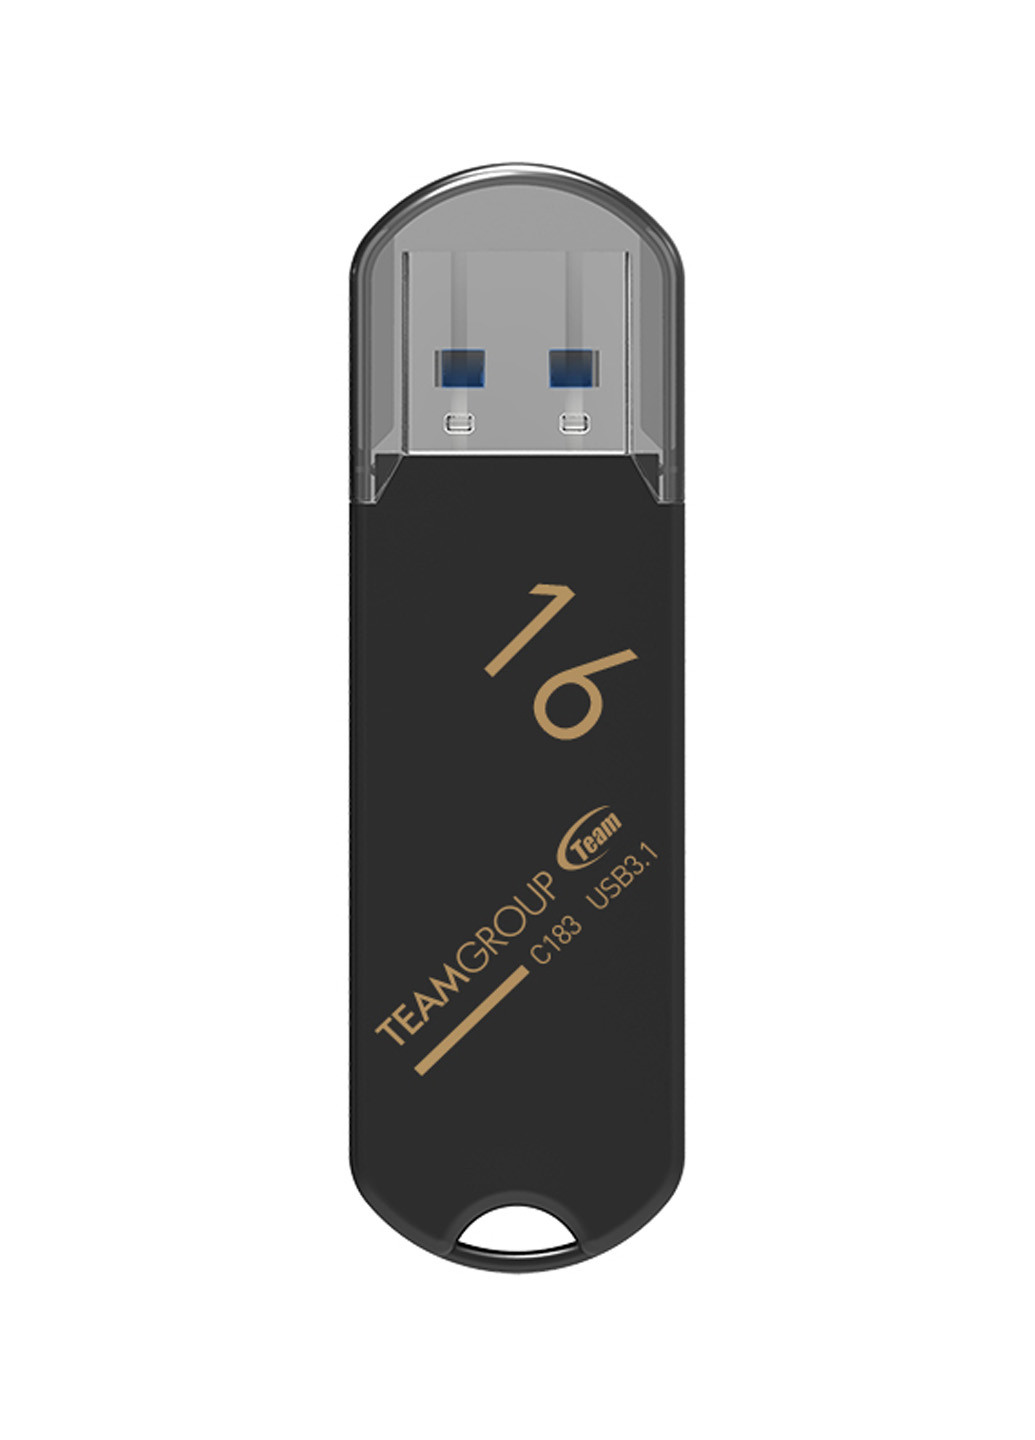 Флеш пам'ять USB C183 16GB Black (TC183316GB01) Team флеш память usb team c183 16gb black (tc183316gb01) (134201706)